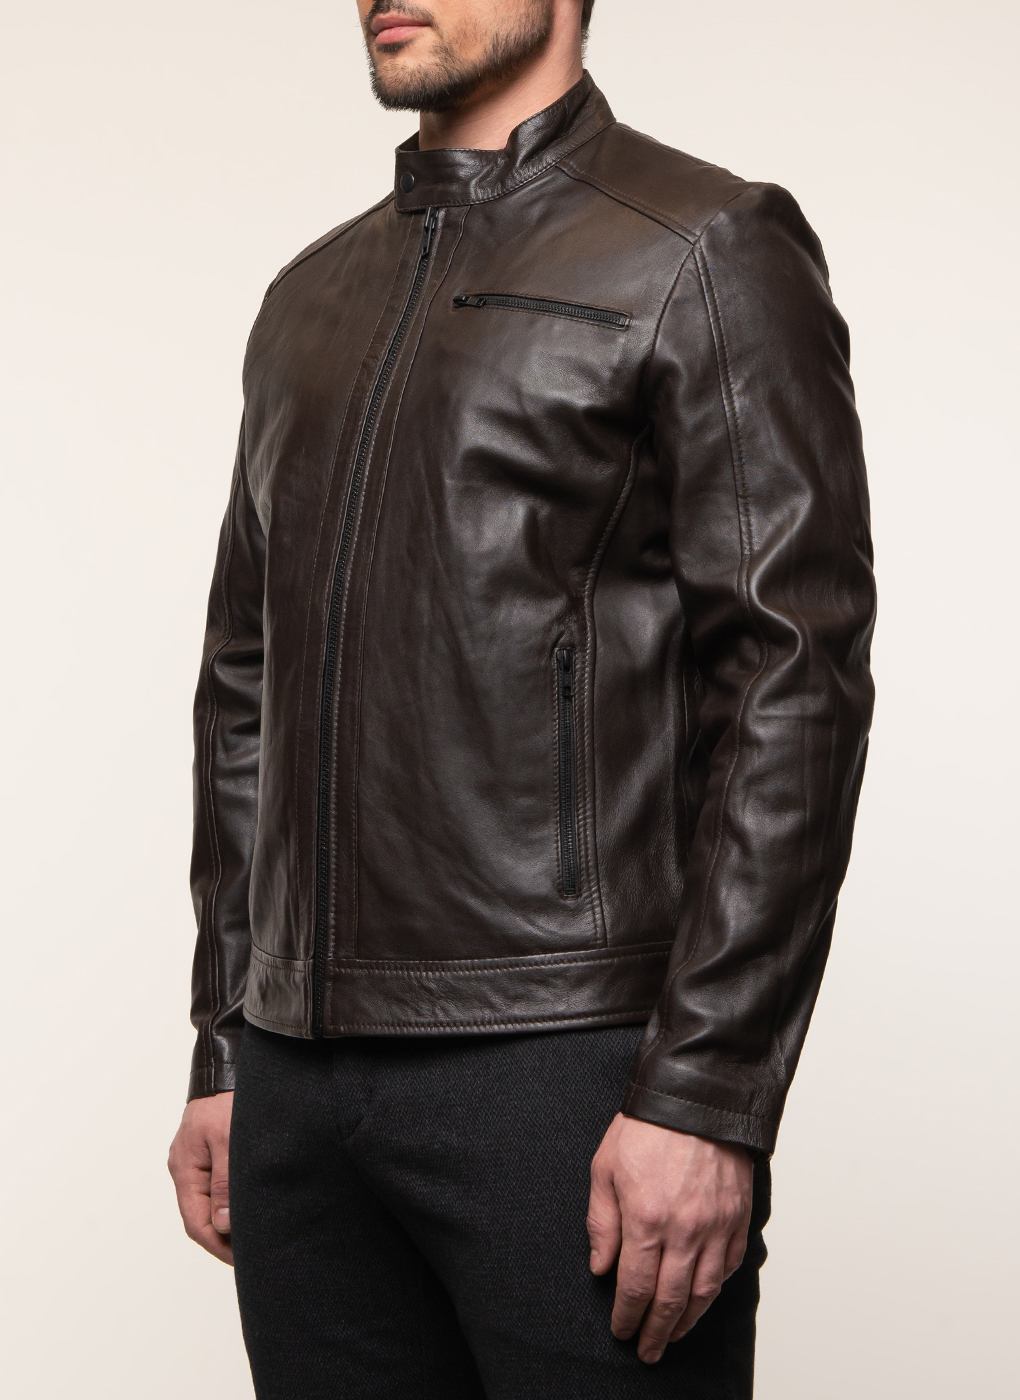 Кожаная куртка мужская Каляев 51792 коричневая 56 RU